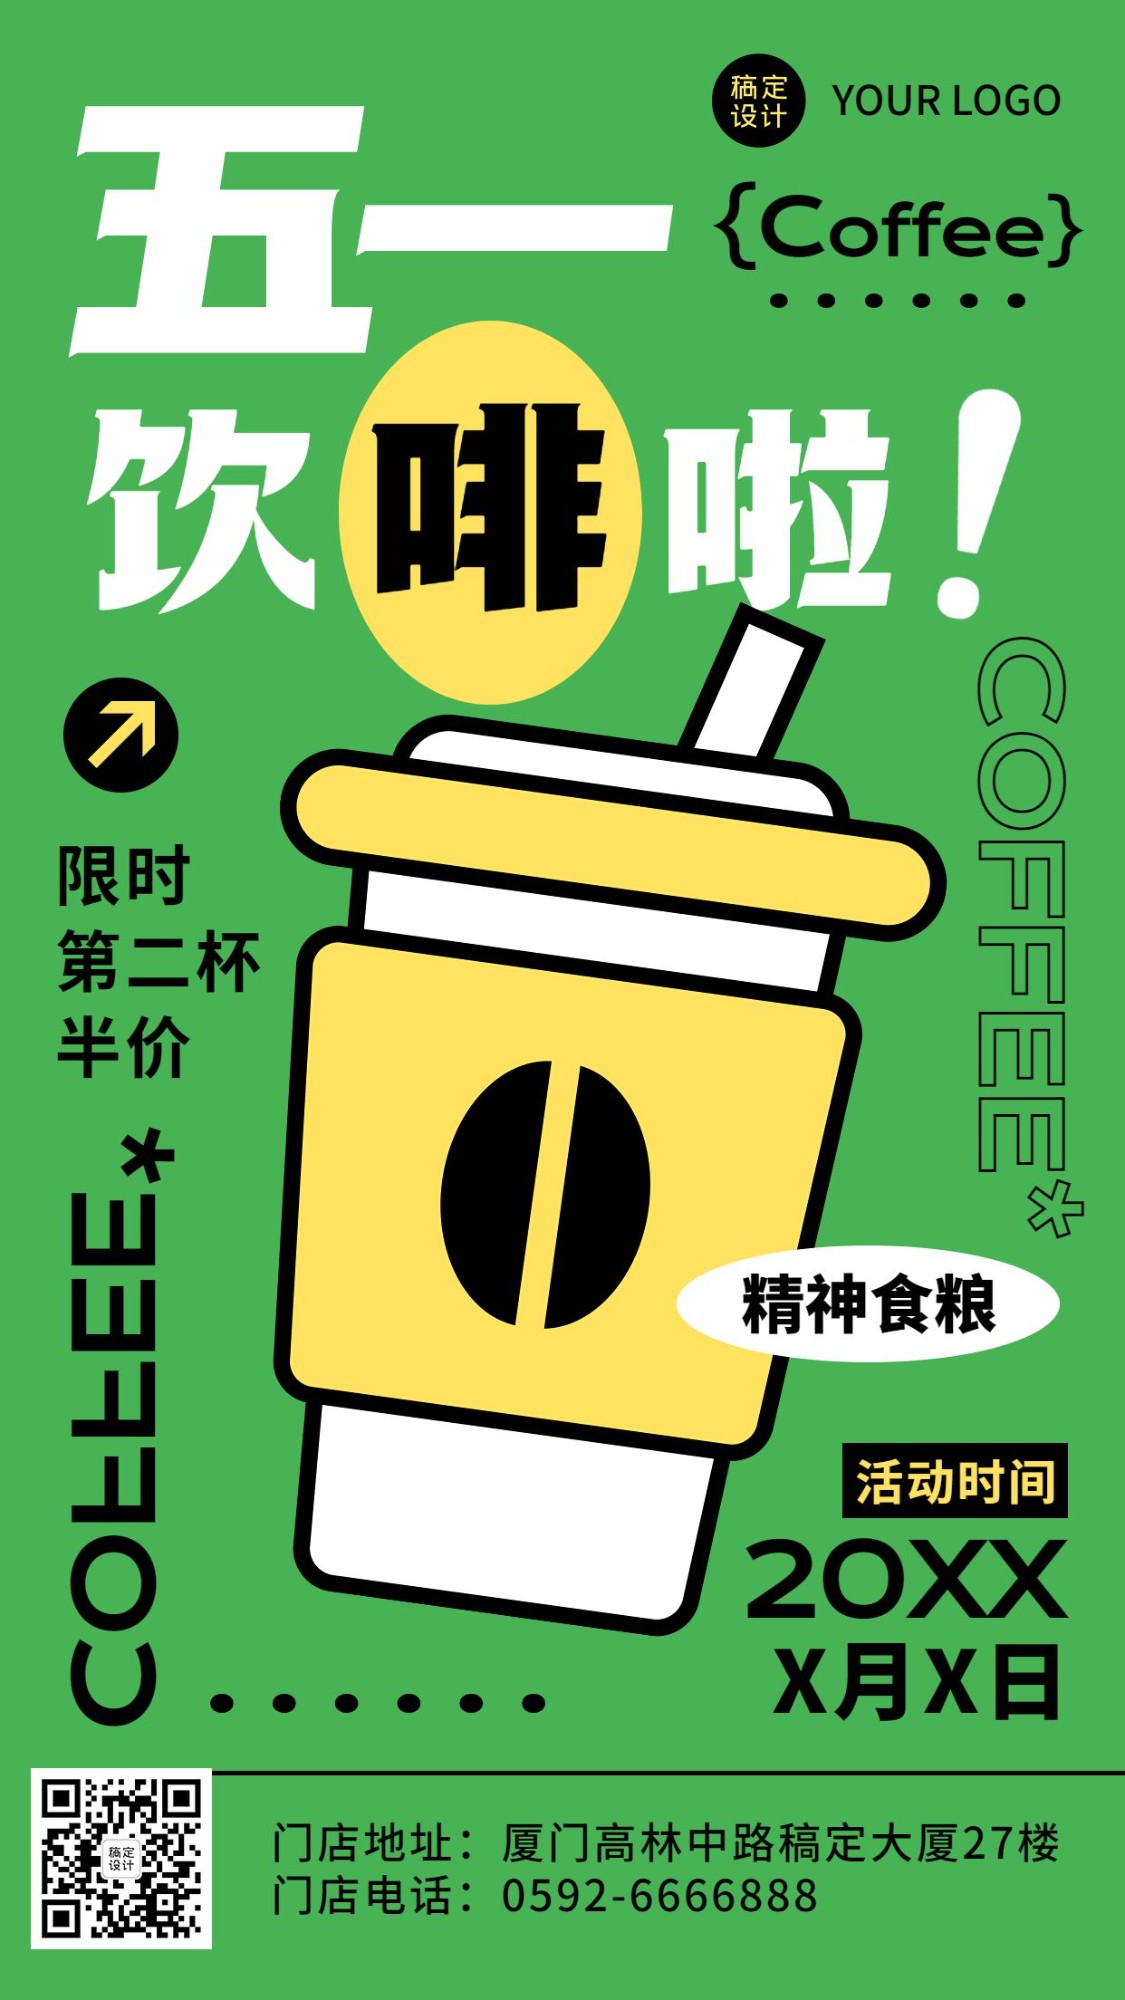 五一劳动节餐饮咖啡产品促销手机海报预览效果